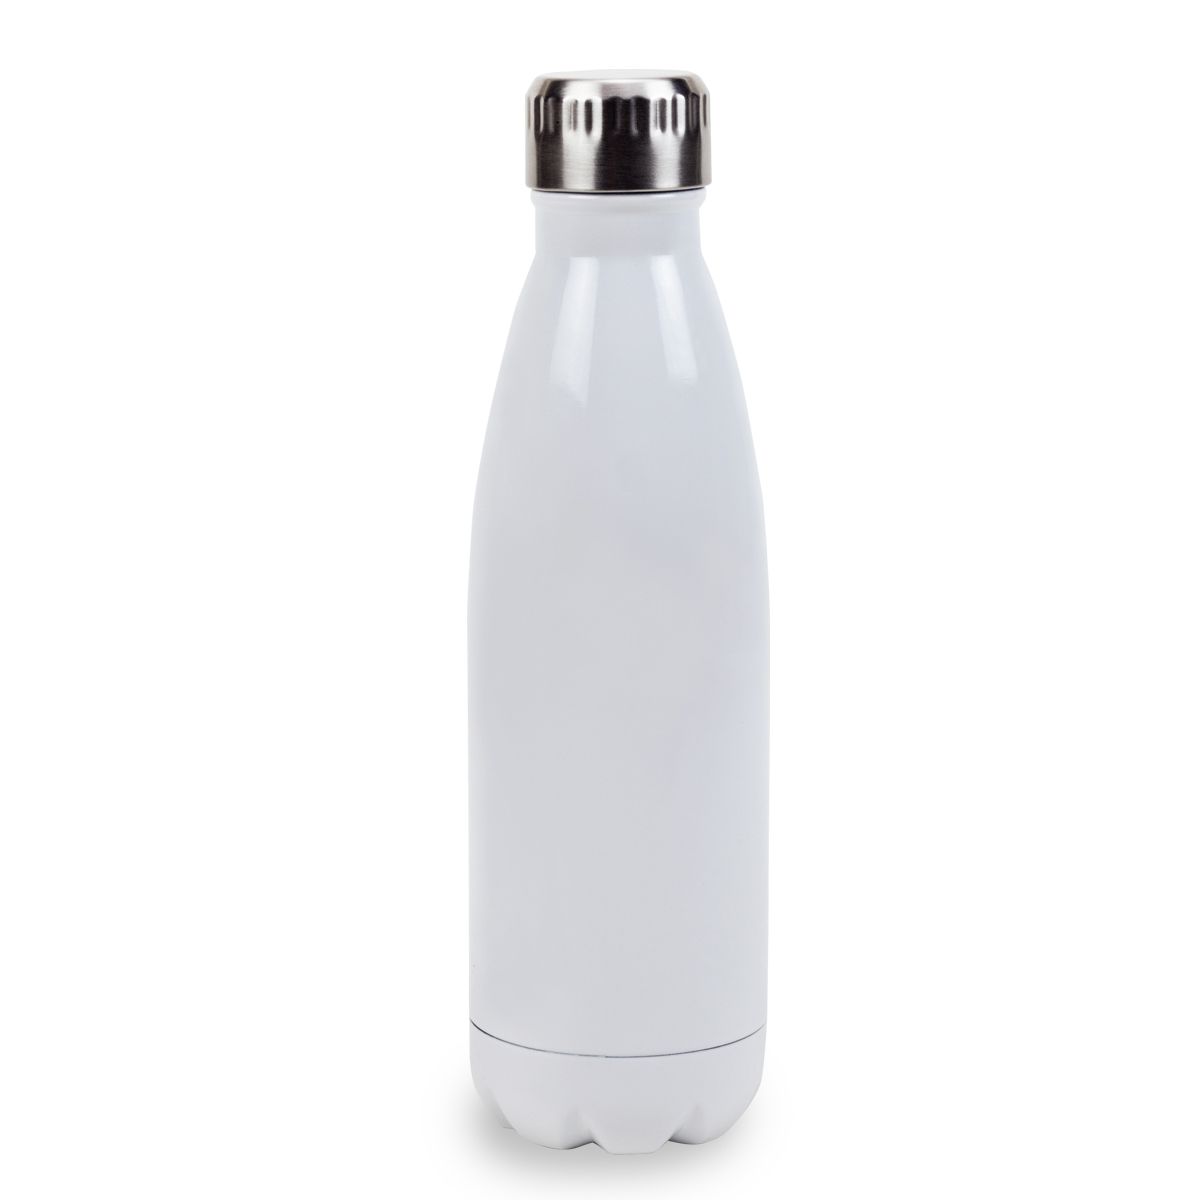 בקבוק שתיה תרמי סובלימציה 500 מל Luxury לבן